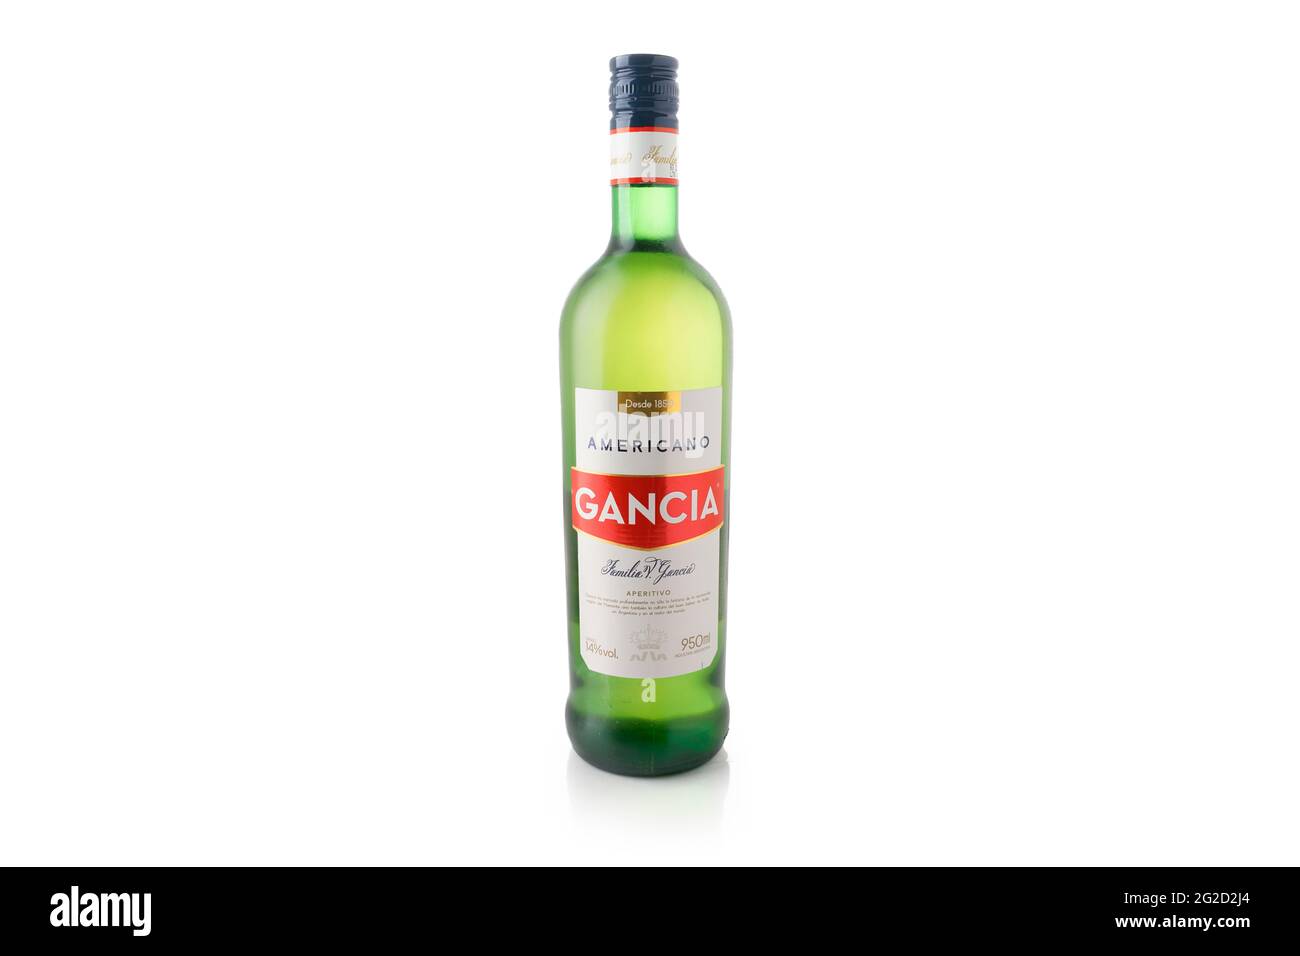 Gancia Flasche auf weißem Hintergrund. Italienischer Aperitif. Alkoholisches Getränk Stockfoto